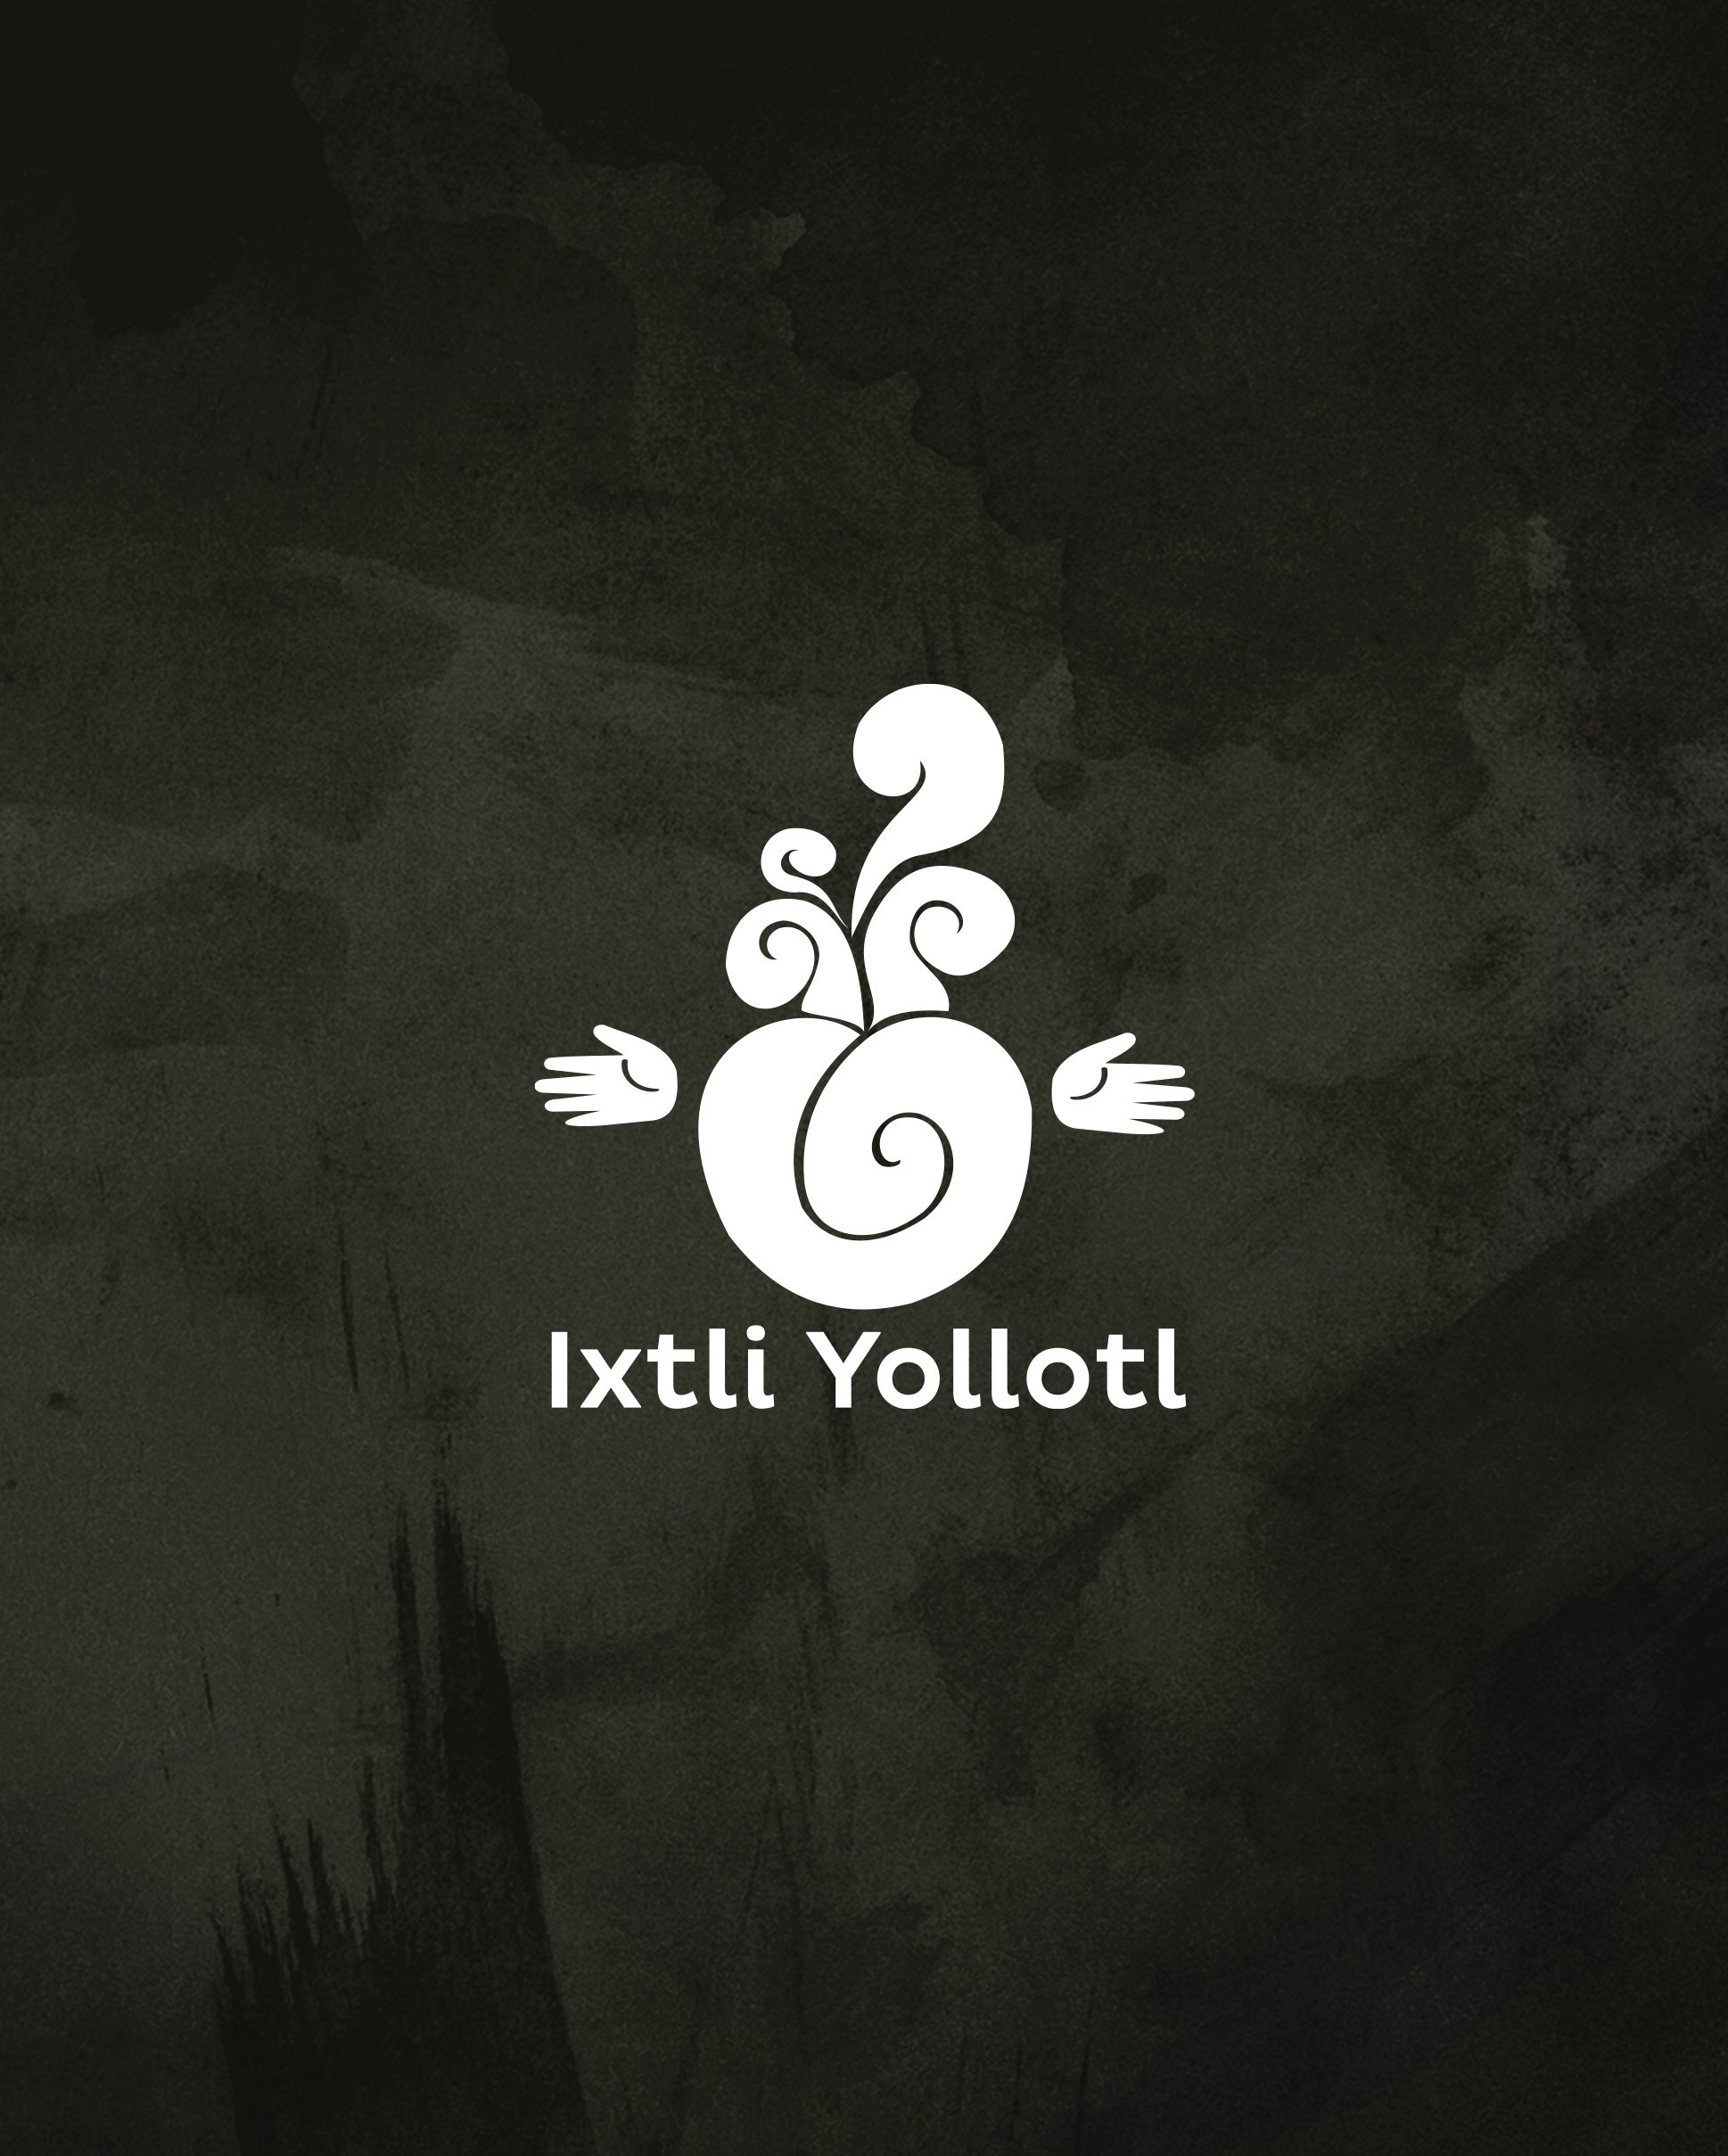 Ixtli Llolotl • Art direction, branding and identity. 